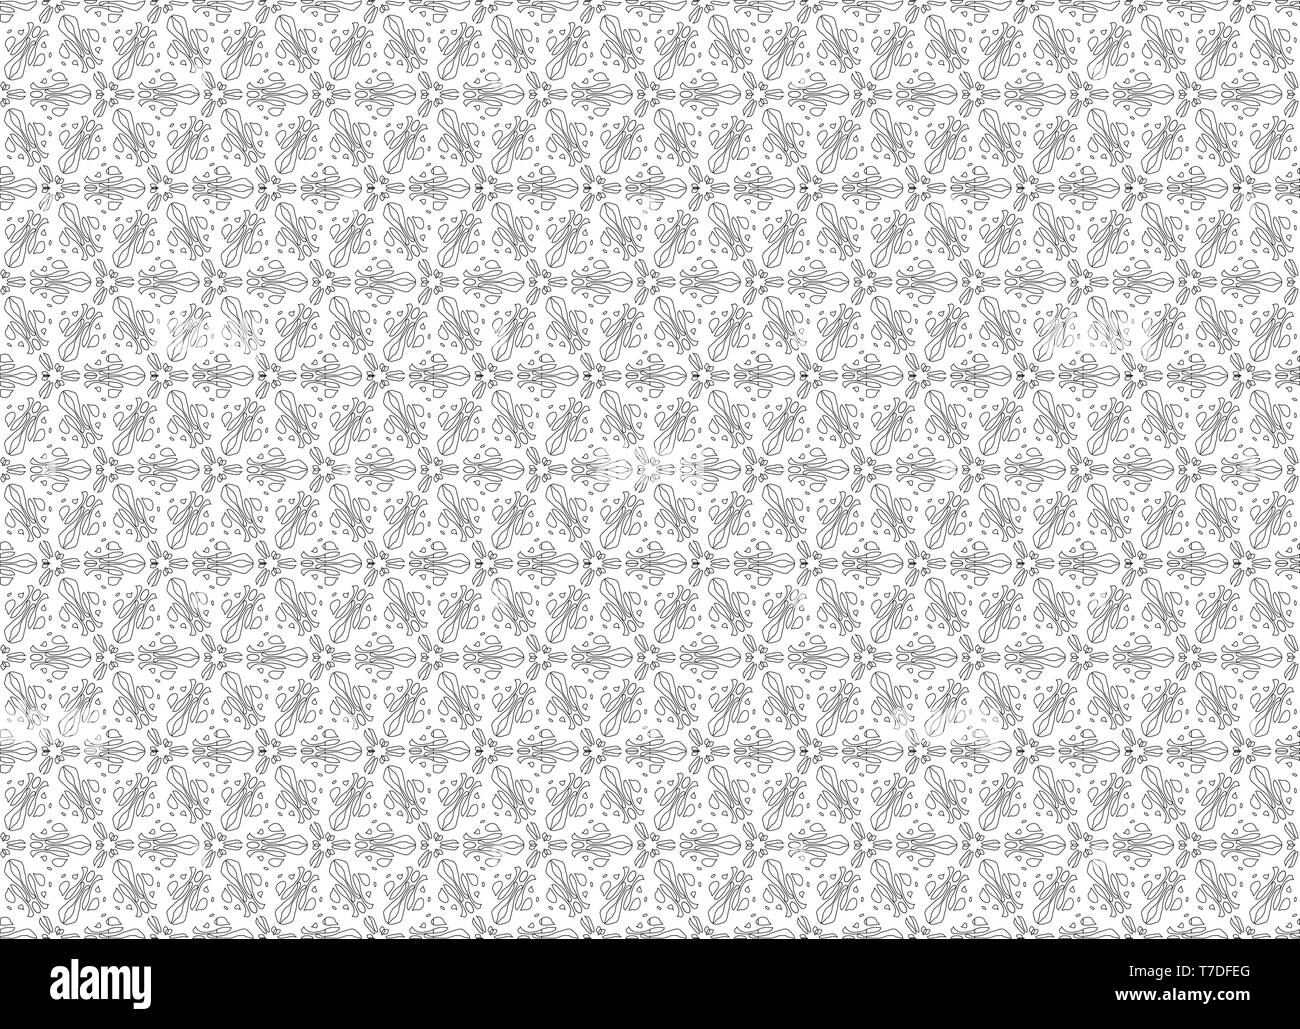 Abstrait géométrique transparente modèle vecteur monochrome. Linear formes noires sur fond blanc. Ornement de fleurs stylisées Illustration de Vecteur